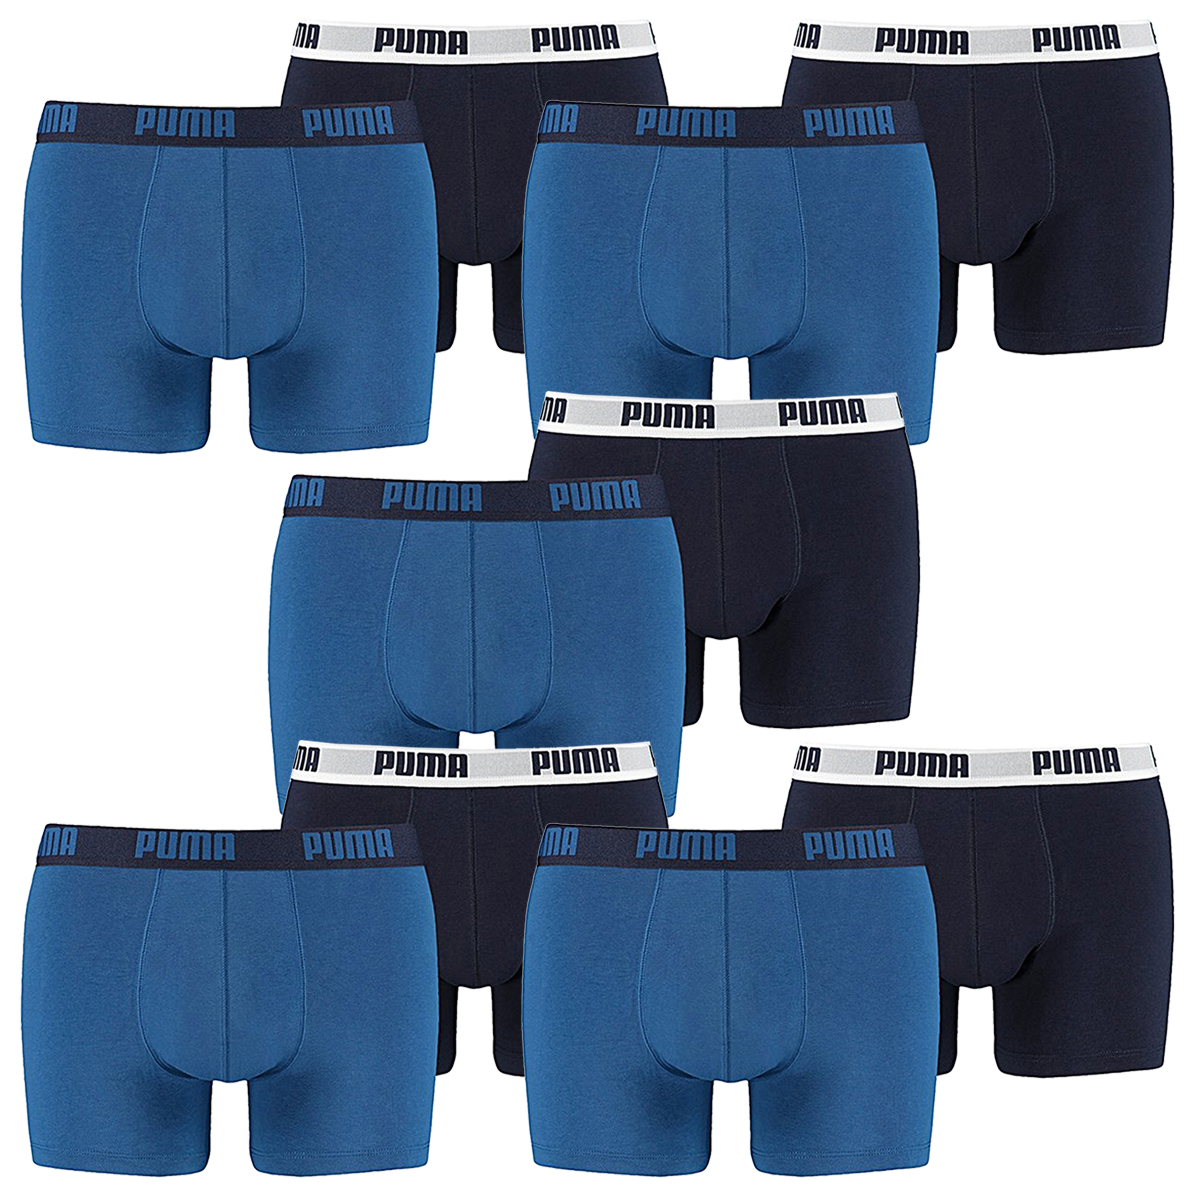 10 er Pack Puma Boxer Boxershorts Men Herren Unterhose Pant Unterwäsche